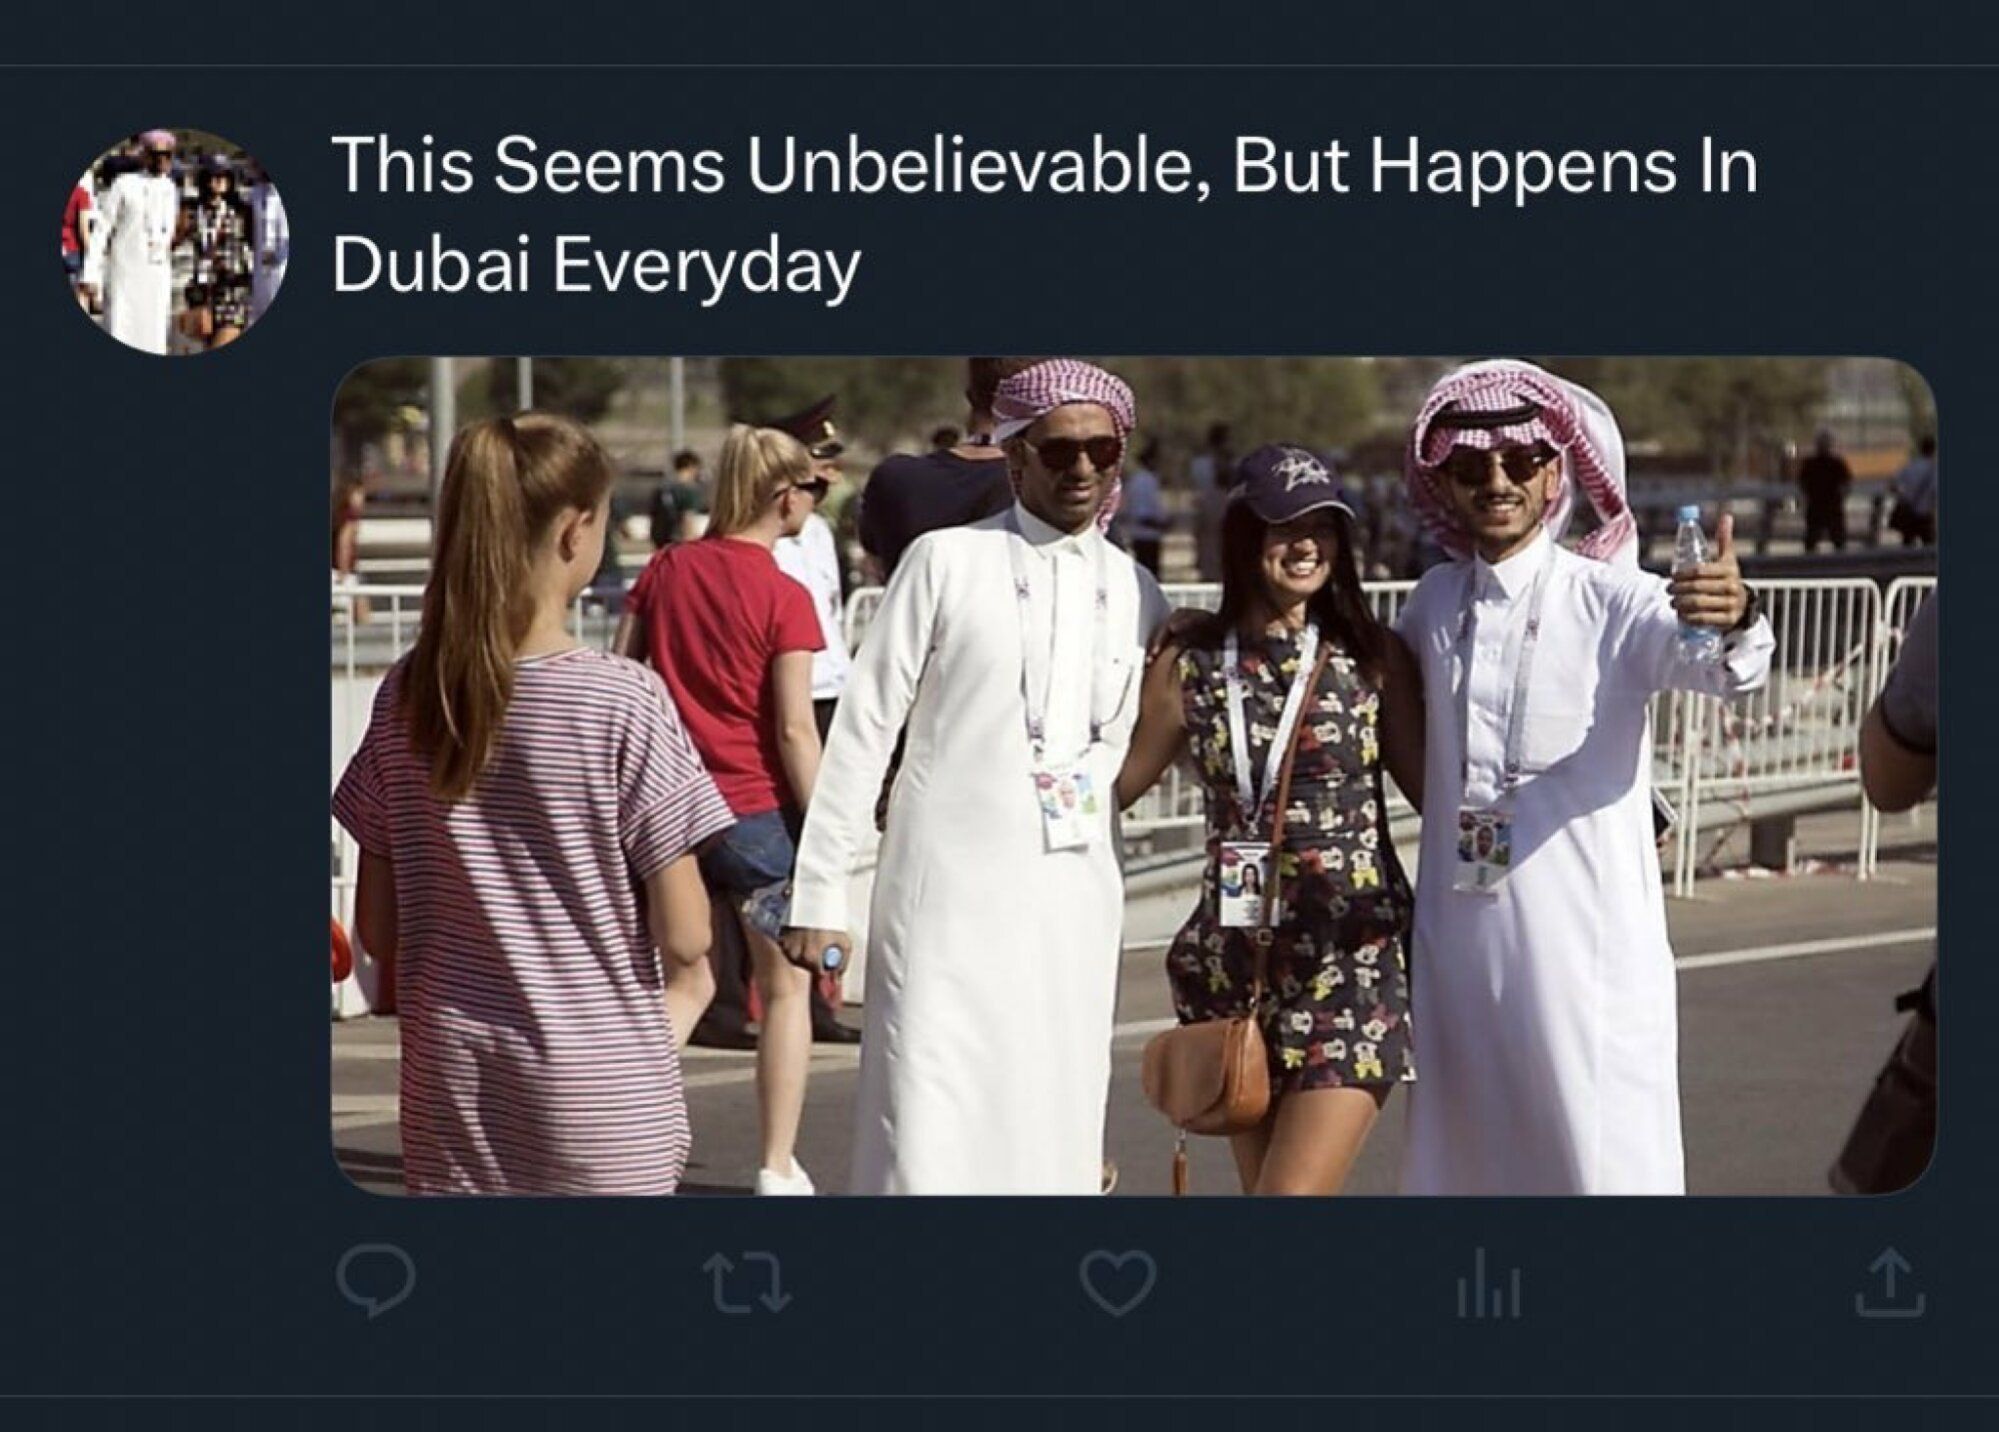 Anúncio, sem identificação, no X. Fotos de homens em trajes árabes com uma mulher de roupa curta, com a legenda (em inglês): “Isso parece inacreditável, mas acontece em Dubai todo dia.”